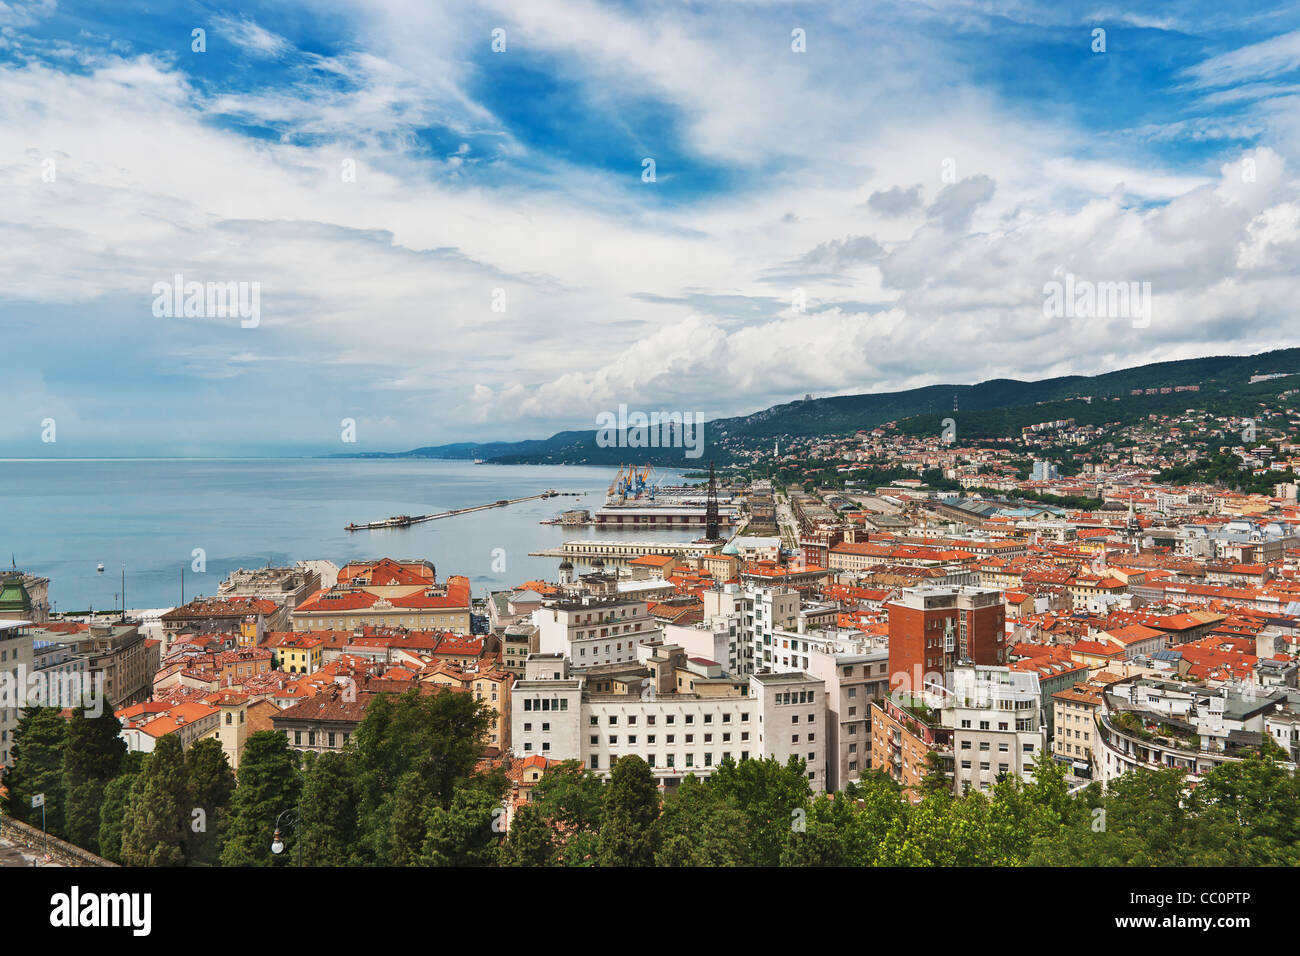 Vue sur le port et la ville de Trieste, Frioul-Vénétie Julienne, Italie, Europe Banque D'Images